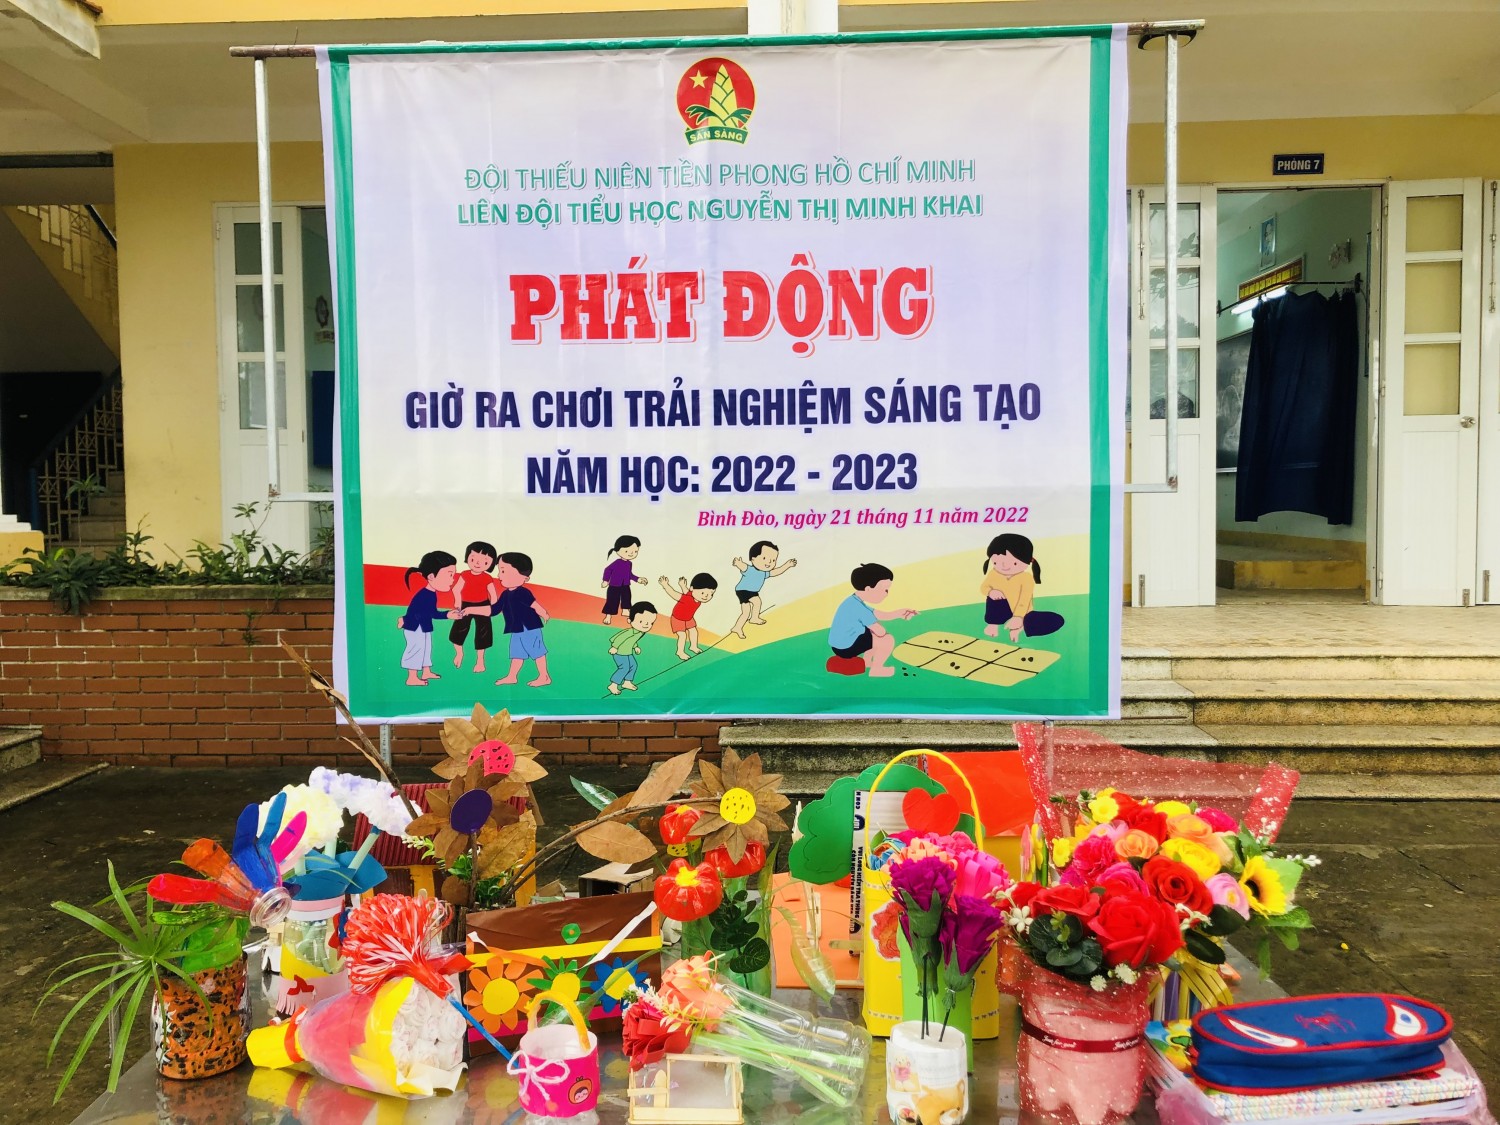 Liên đội Nguyễn Thị Minh Khai tiếp tục phát động "Giờ ra chơi trải nghiệm sáng tạo" .